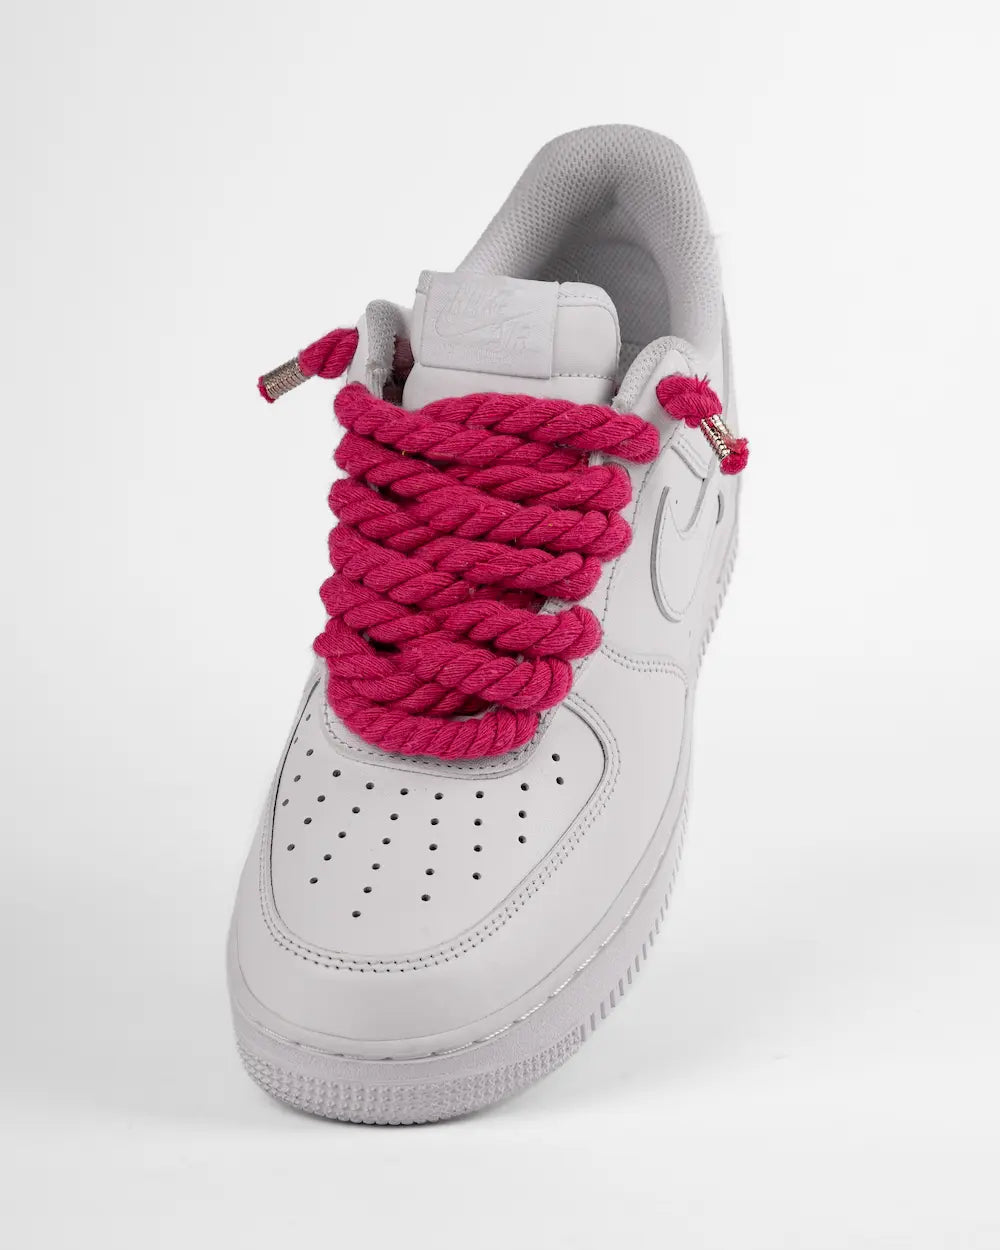 Nike Air Force 1 bianca personalizzata da SEDDYS con lacci in corda fucsia